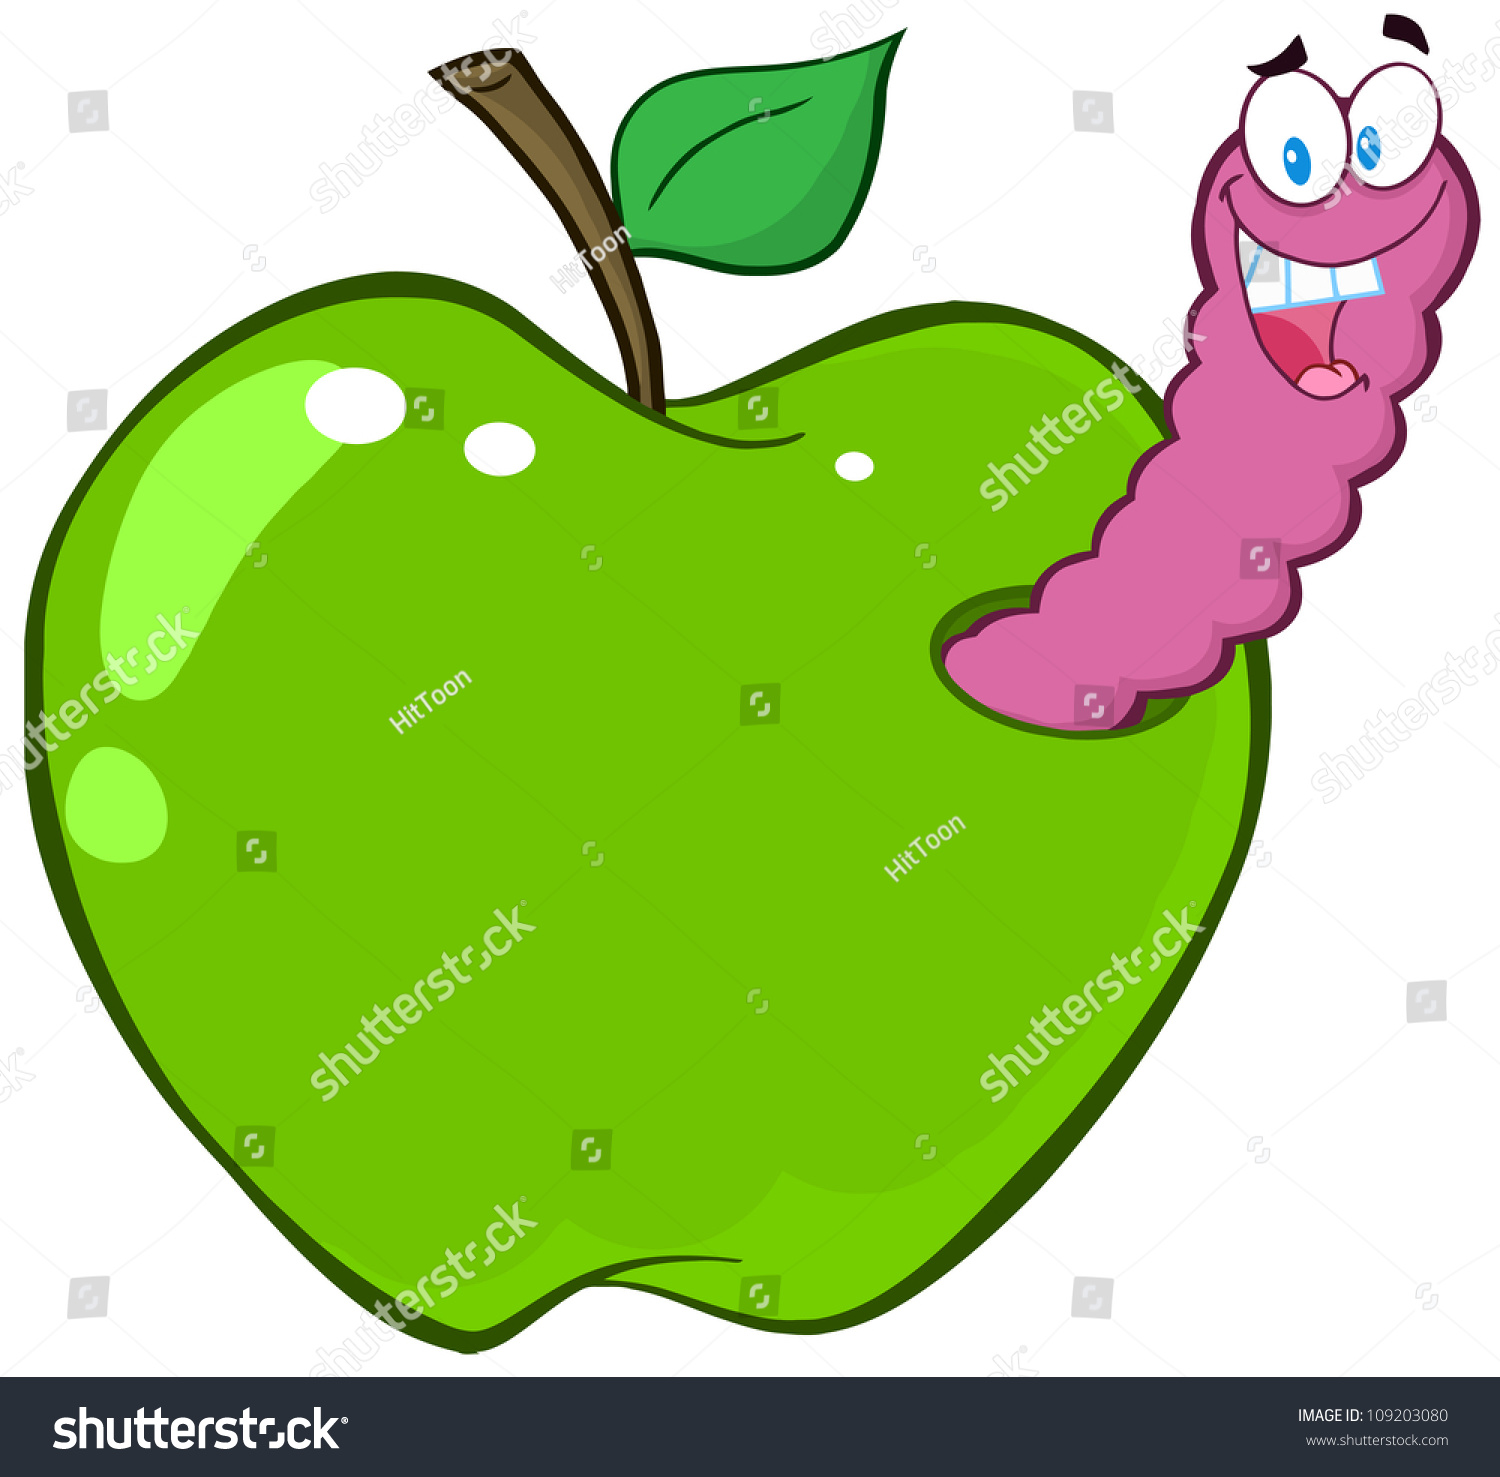 Яблоко с червяком